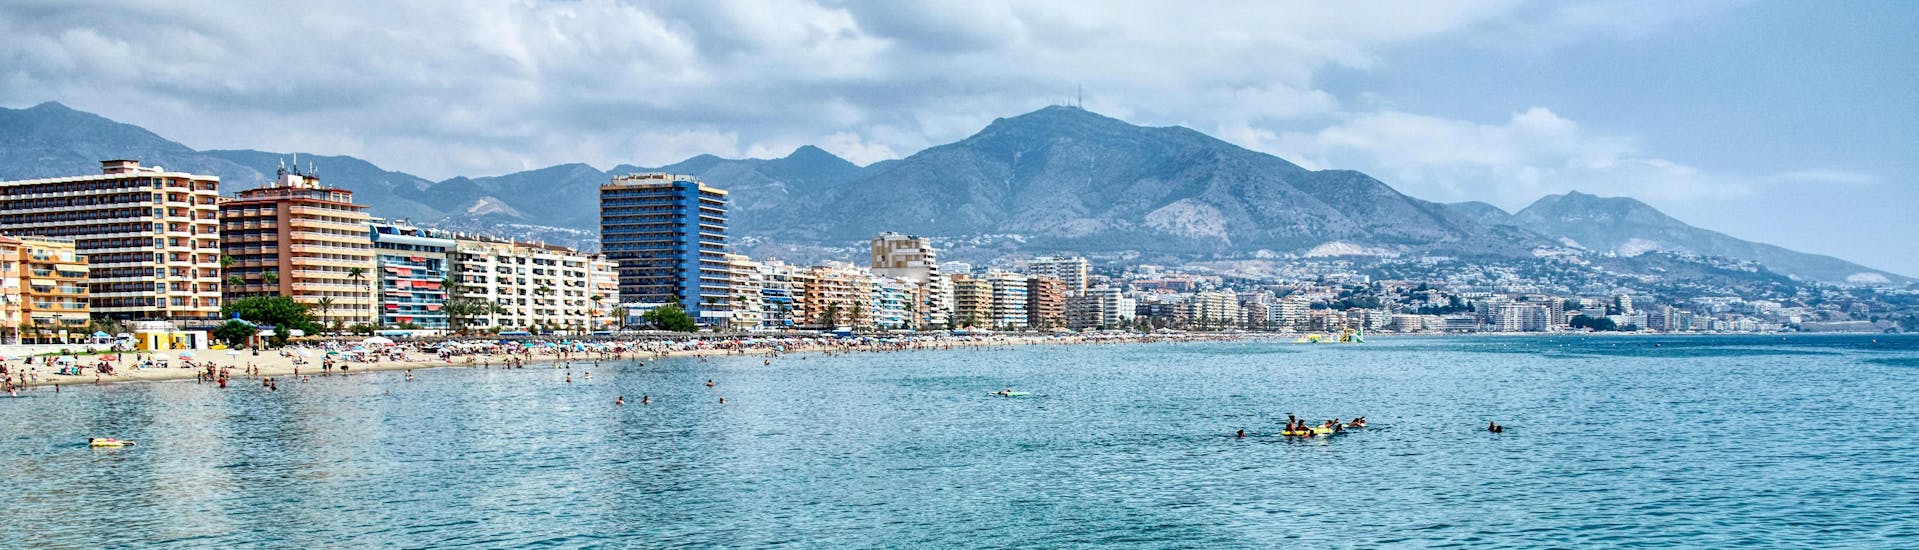 Vista de la costa de Fuengirola, Málaga, un popular destino de vacaciones para deportes acuáticos y paseos en barco.